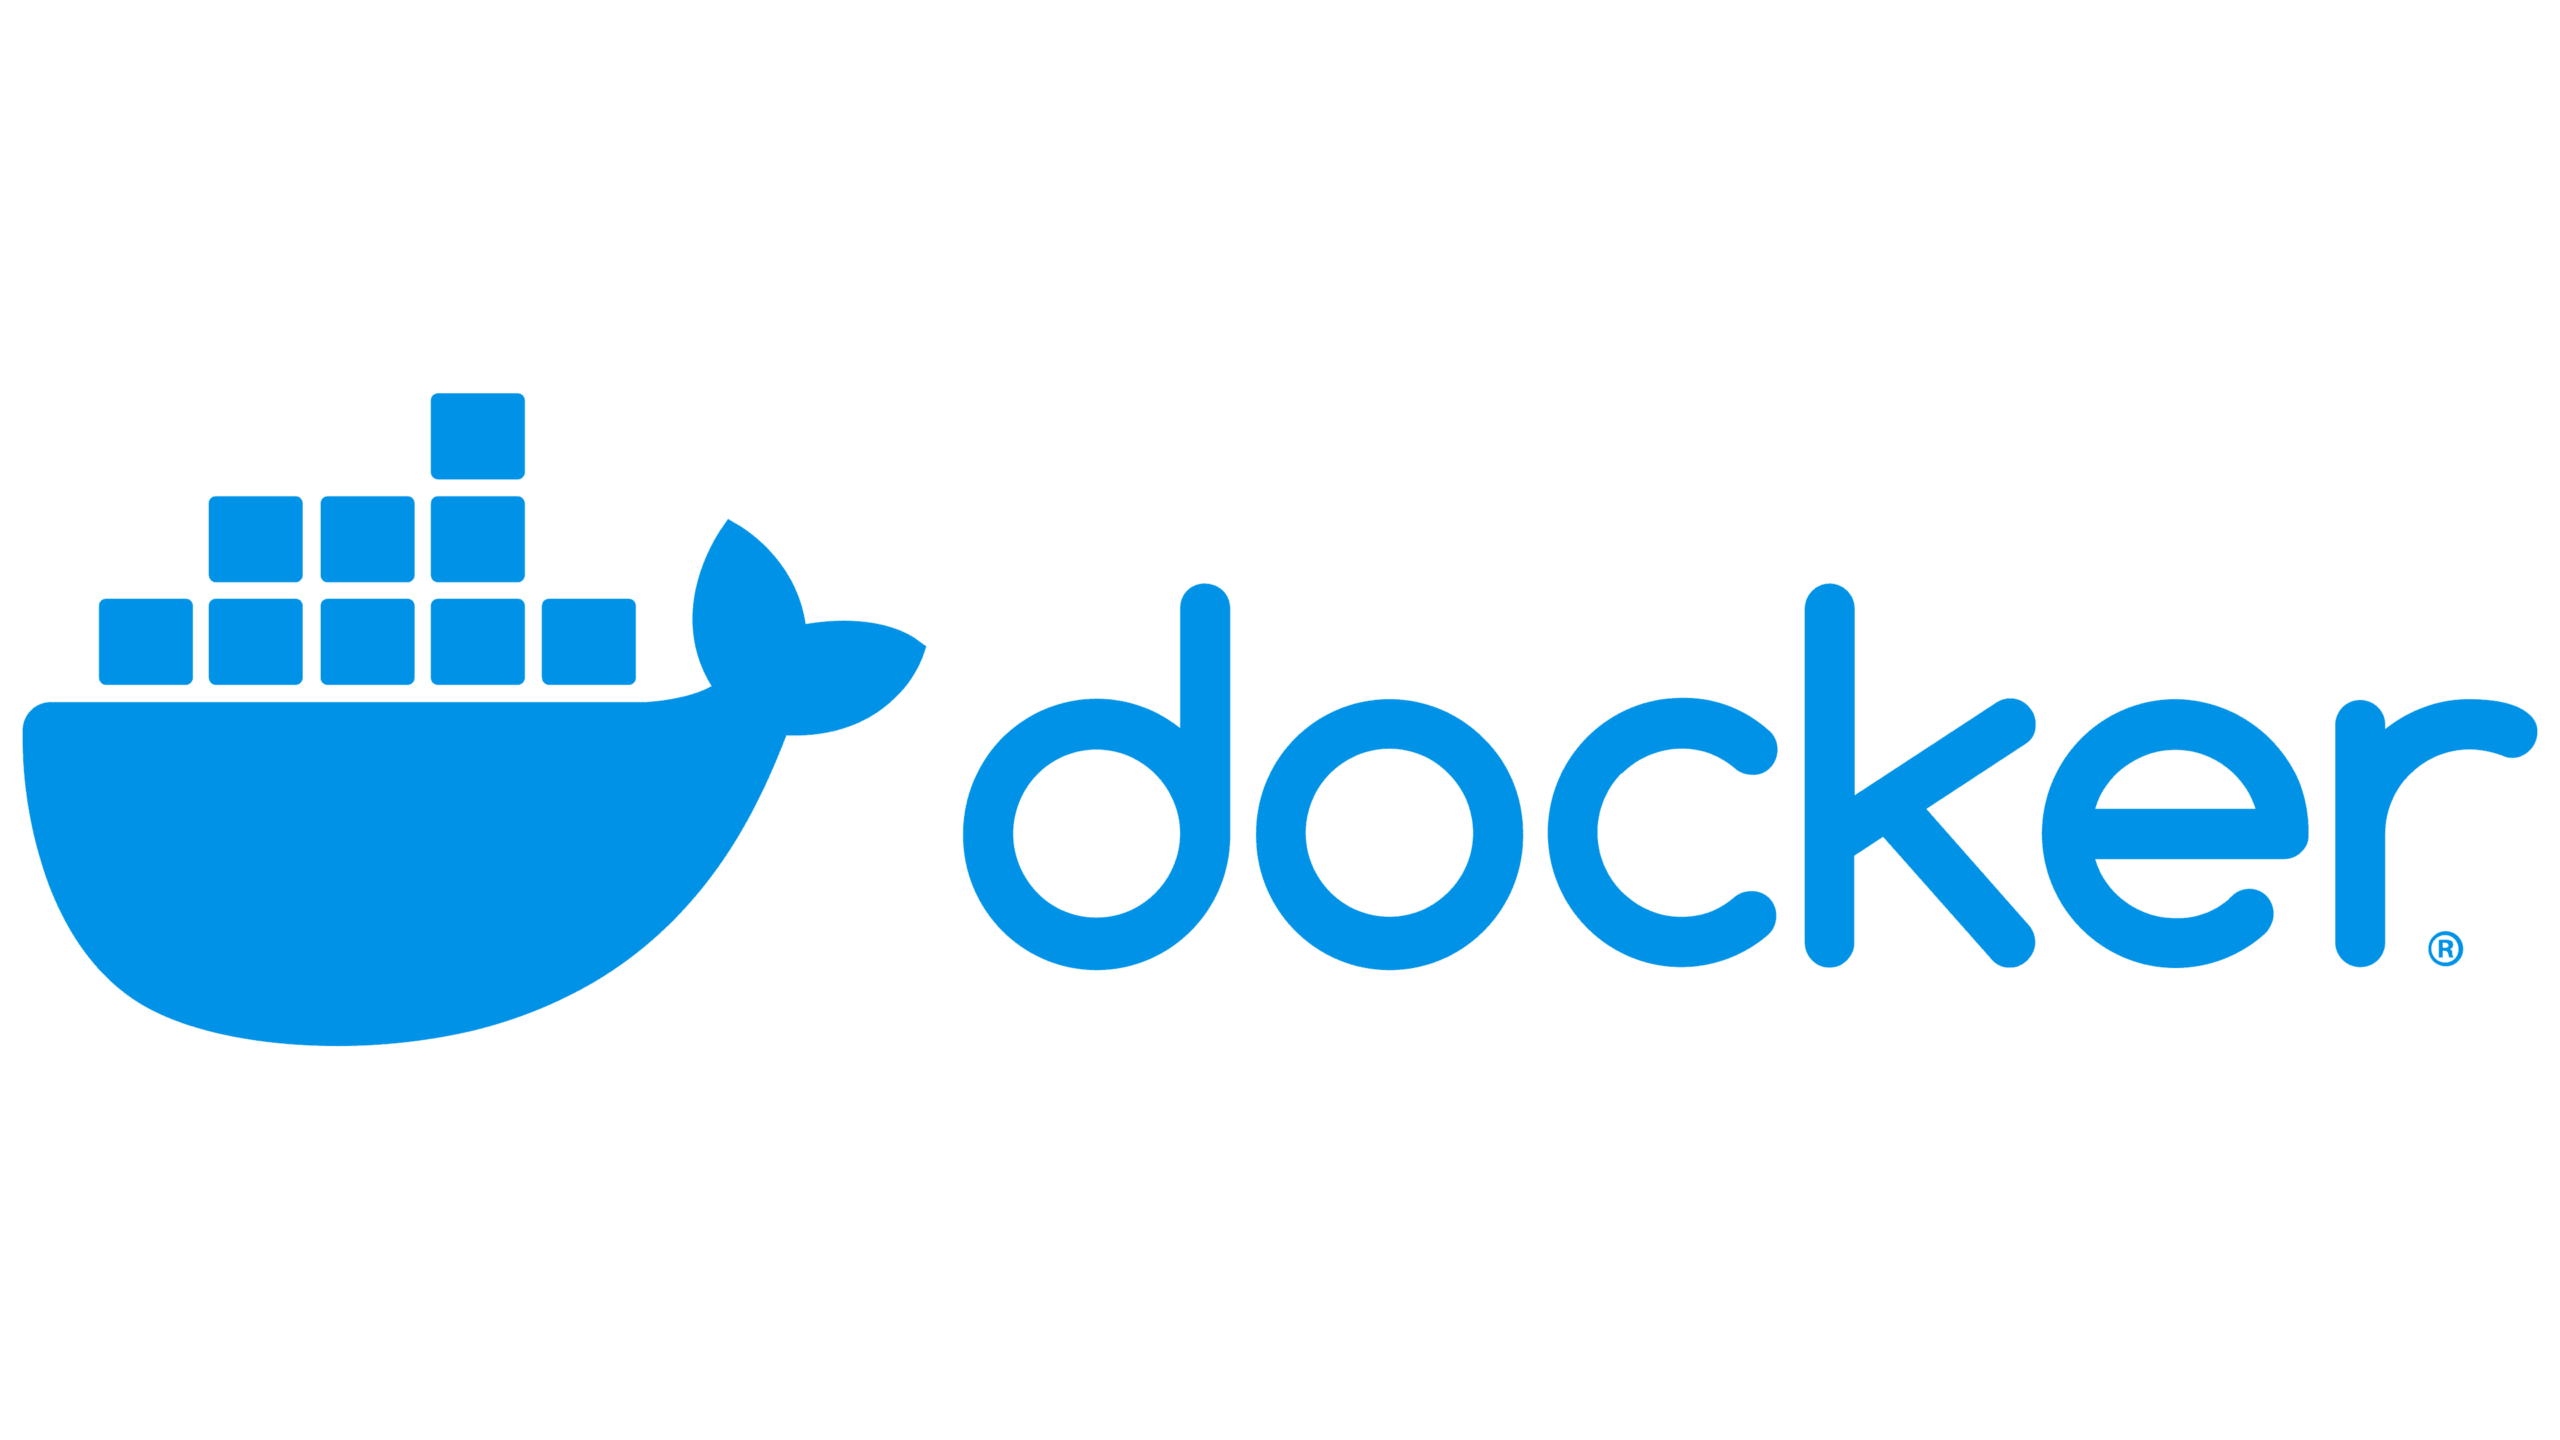 DockerFile